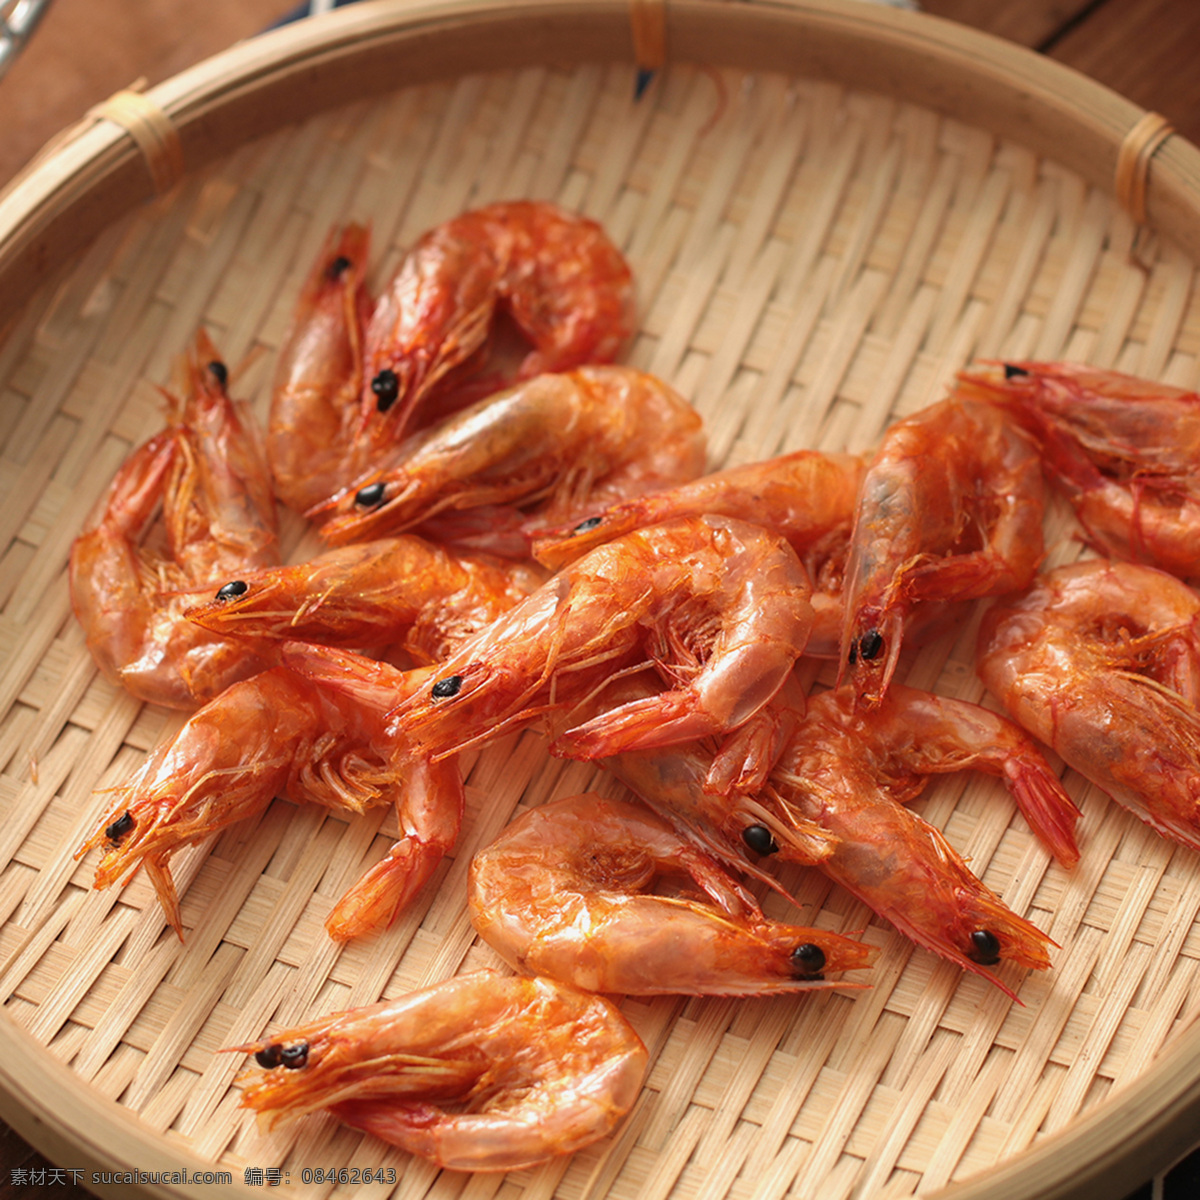 干虾 锅烙虾 熟虾 红虾 没事 海鲜 餐饮美食 传统美食